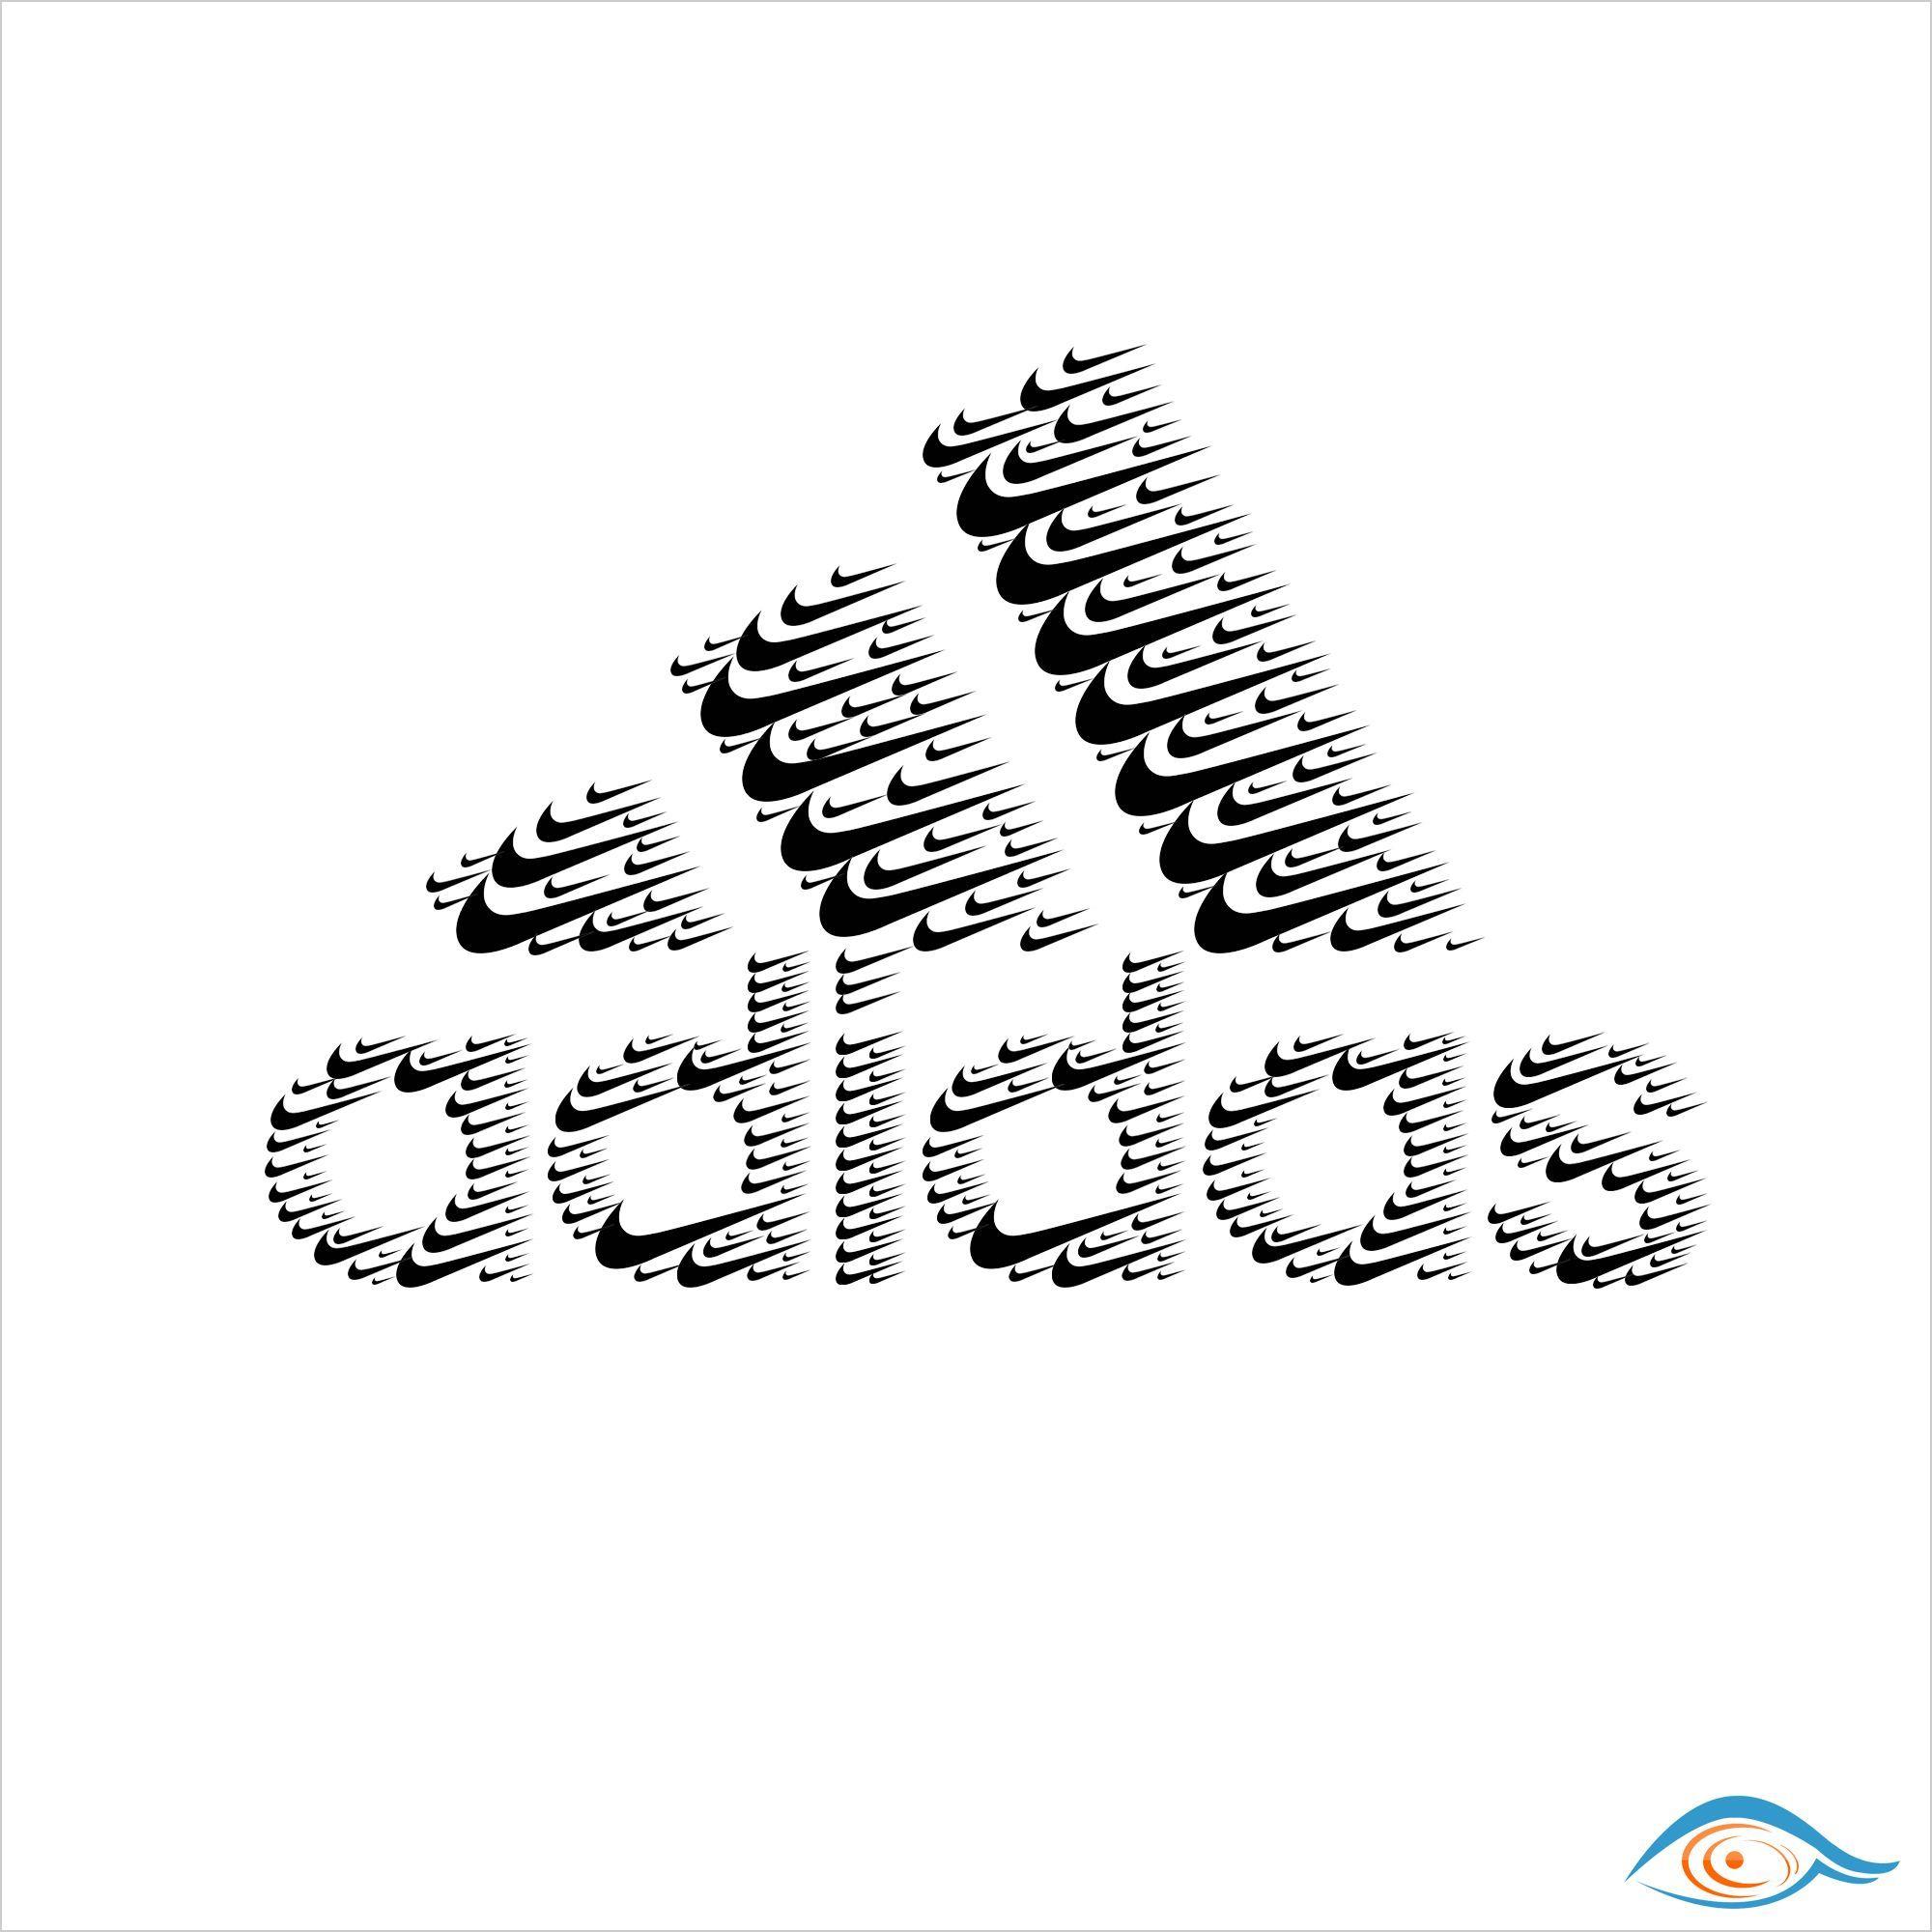 Nike and Adidas Logo - adidas logo designed with many #Nike logos | Adidas in 2019 ...